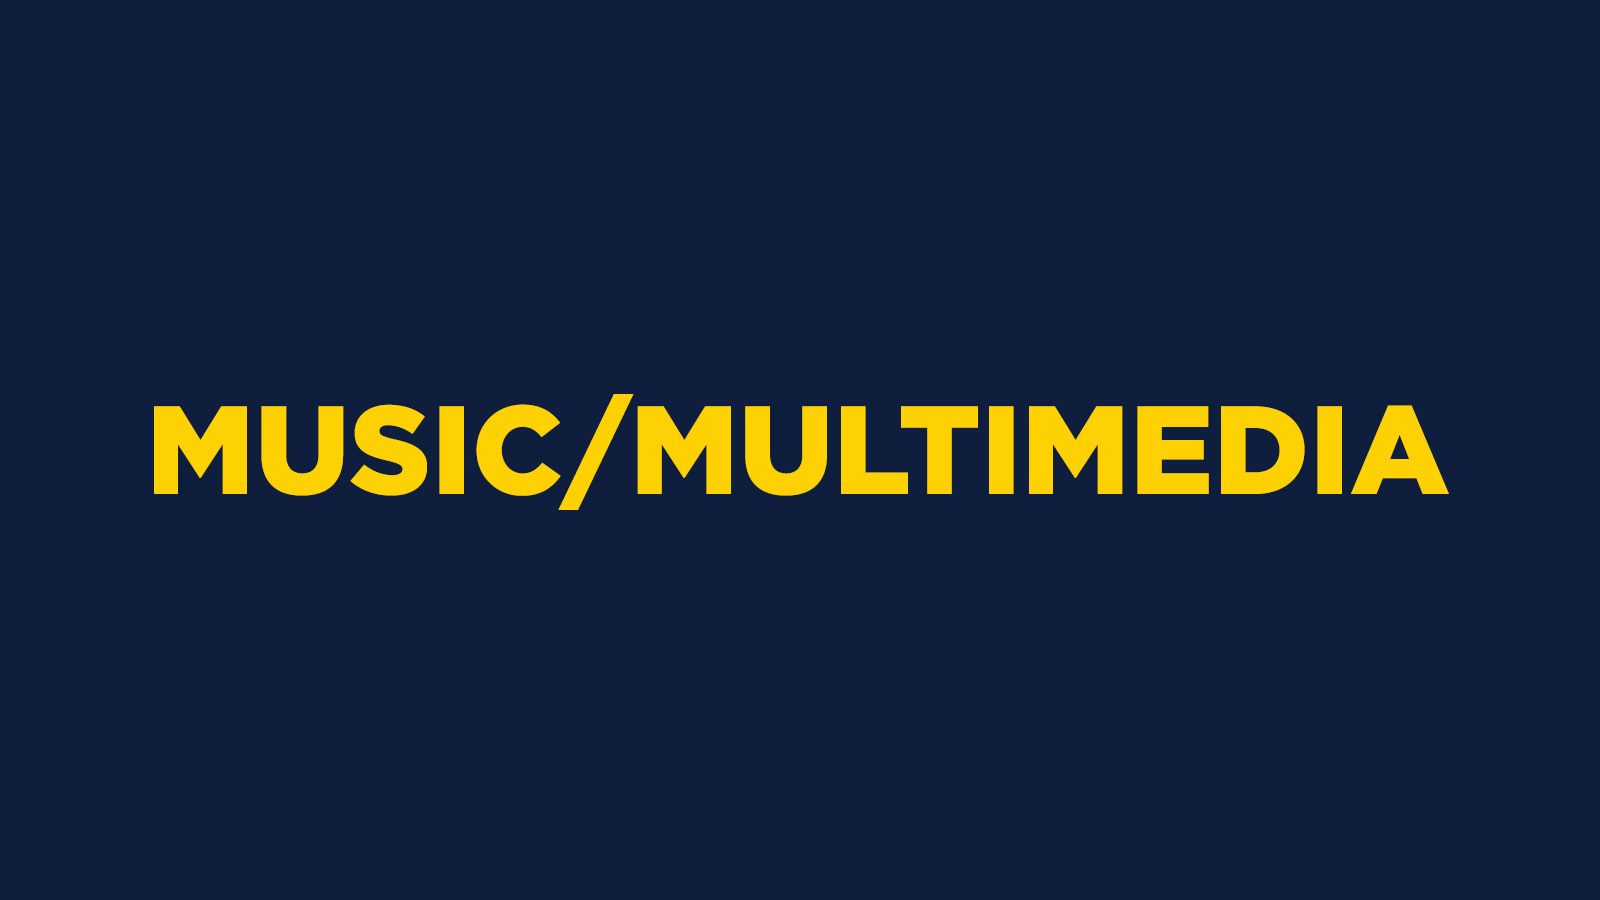 MUSIC/MULTIMEDIA